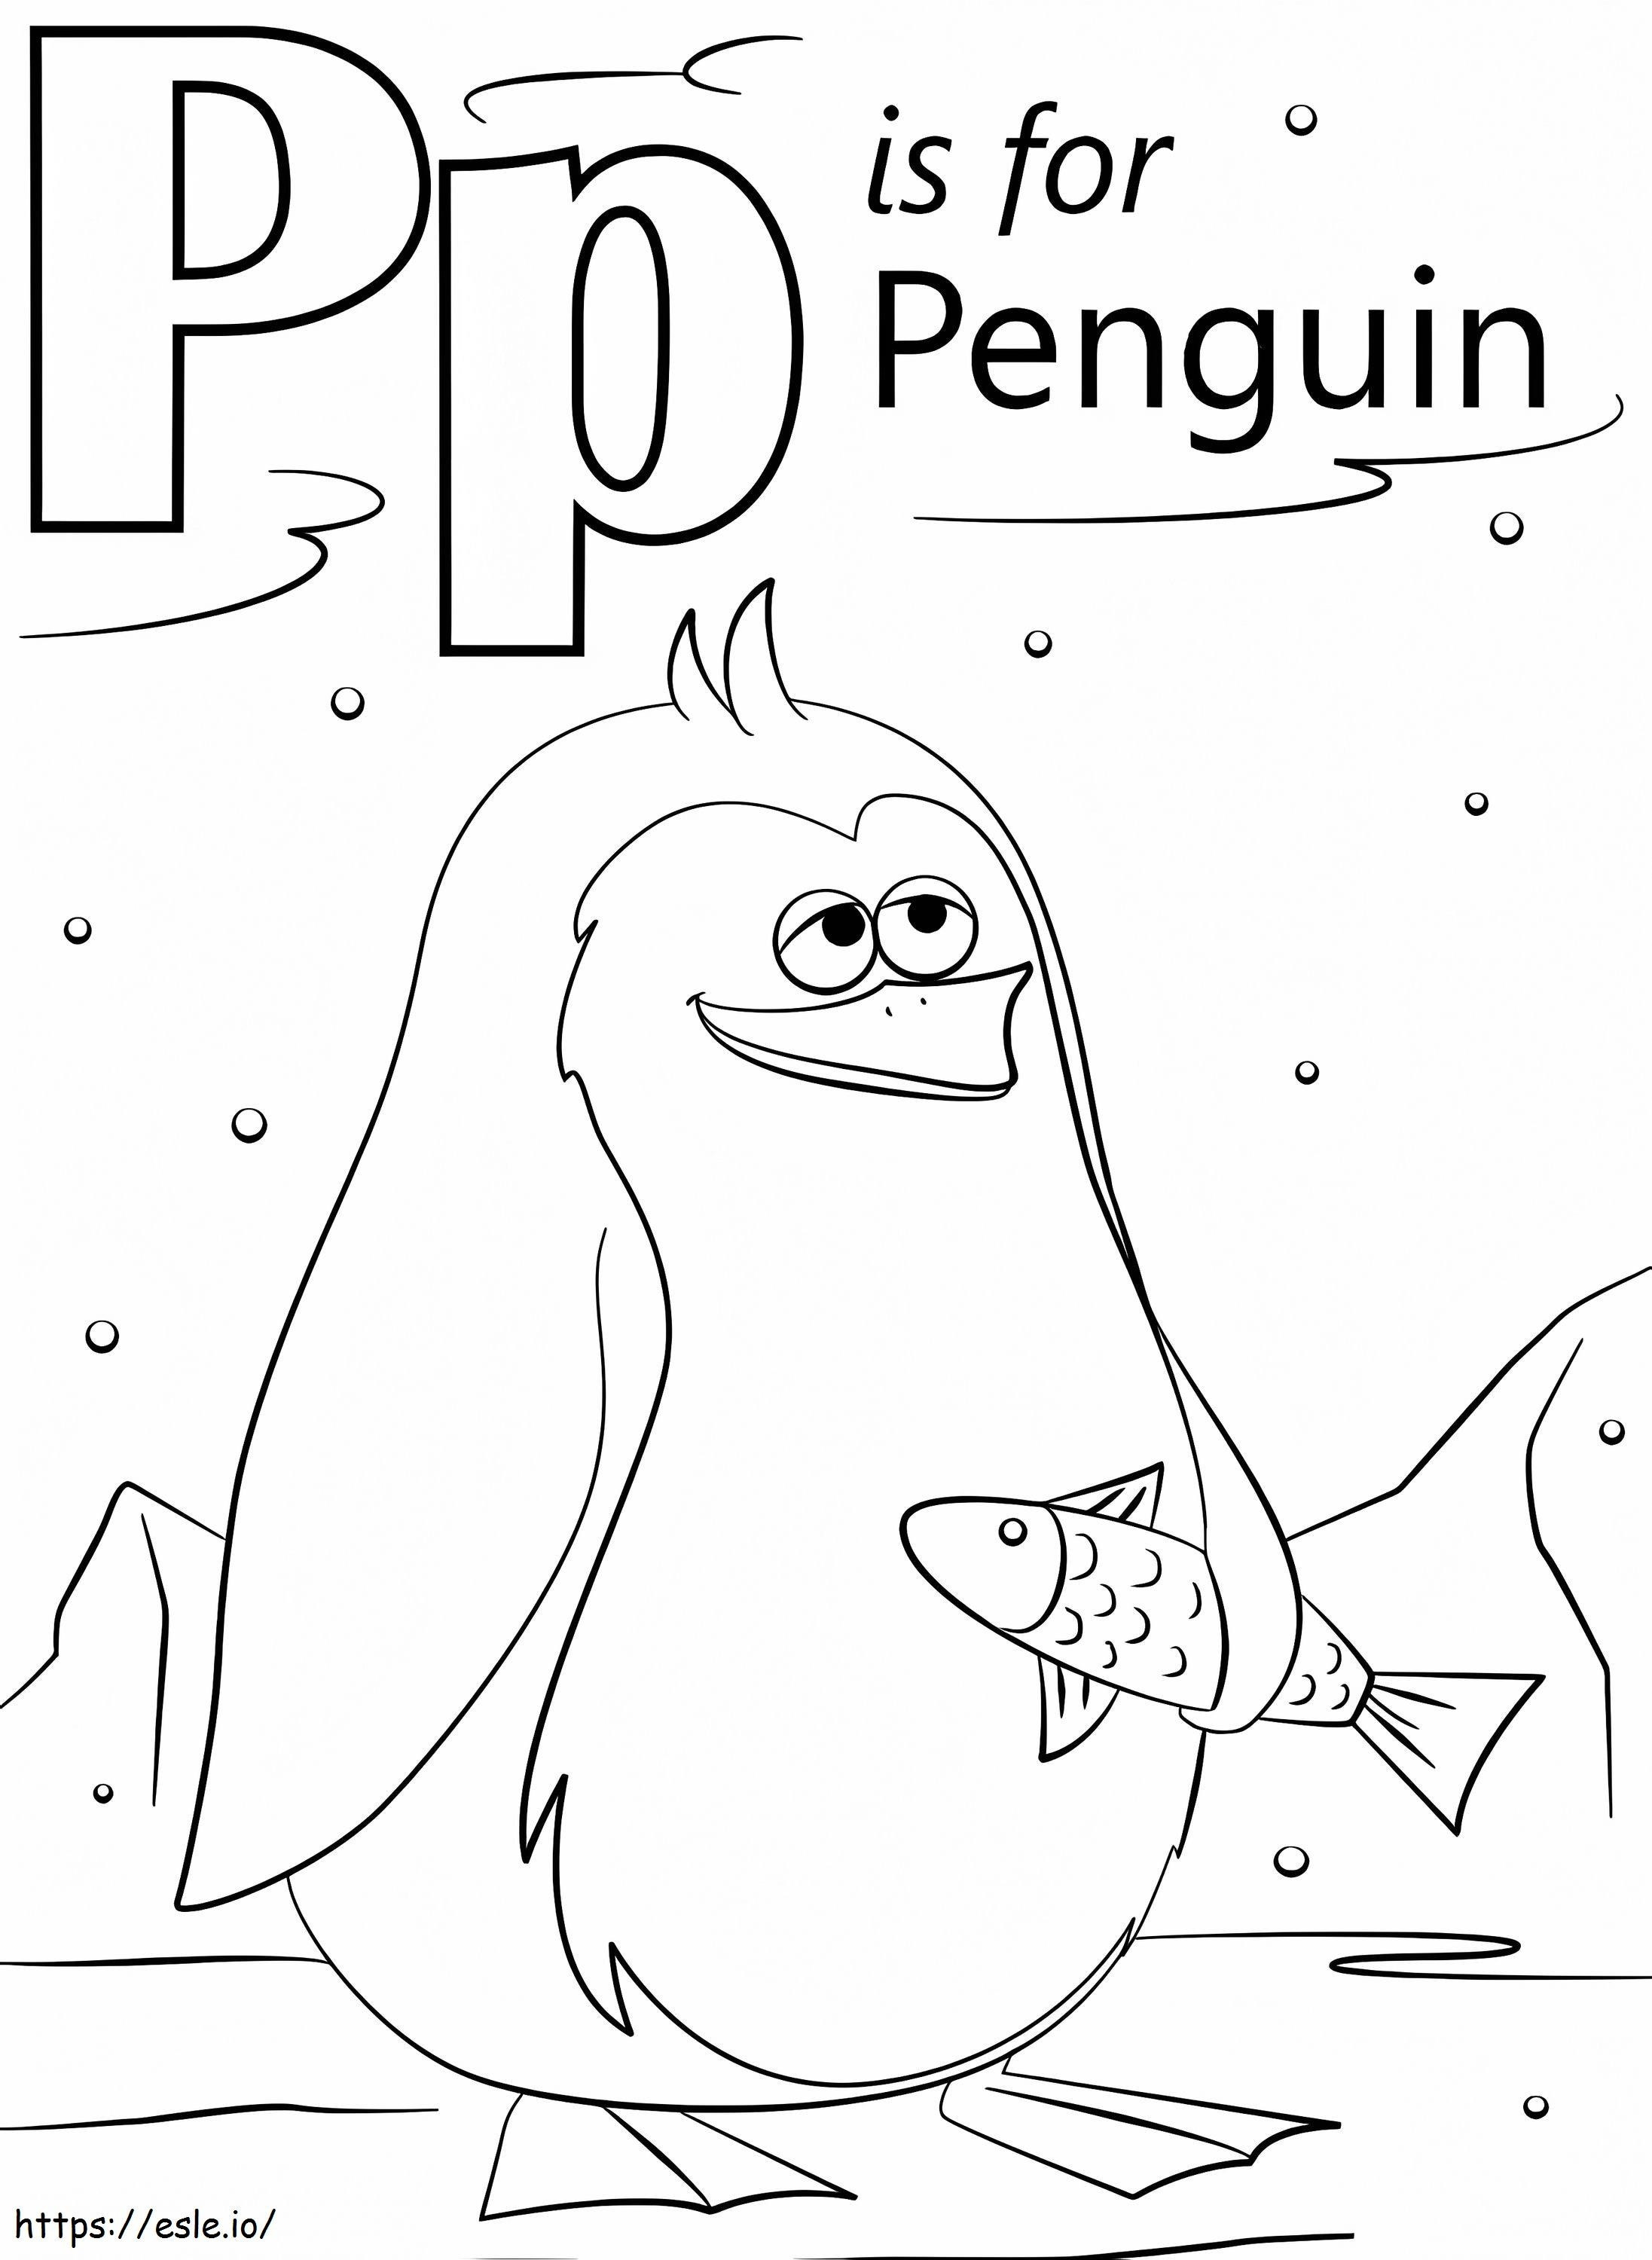 Pinguin-Buchstabe P ausmalbilder